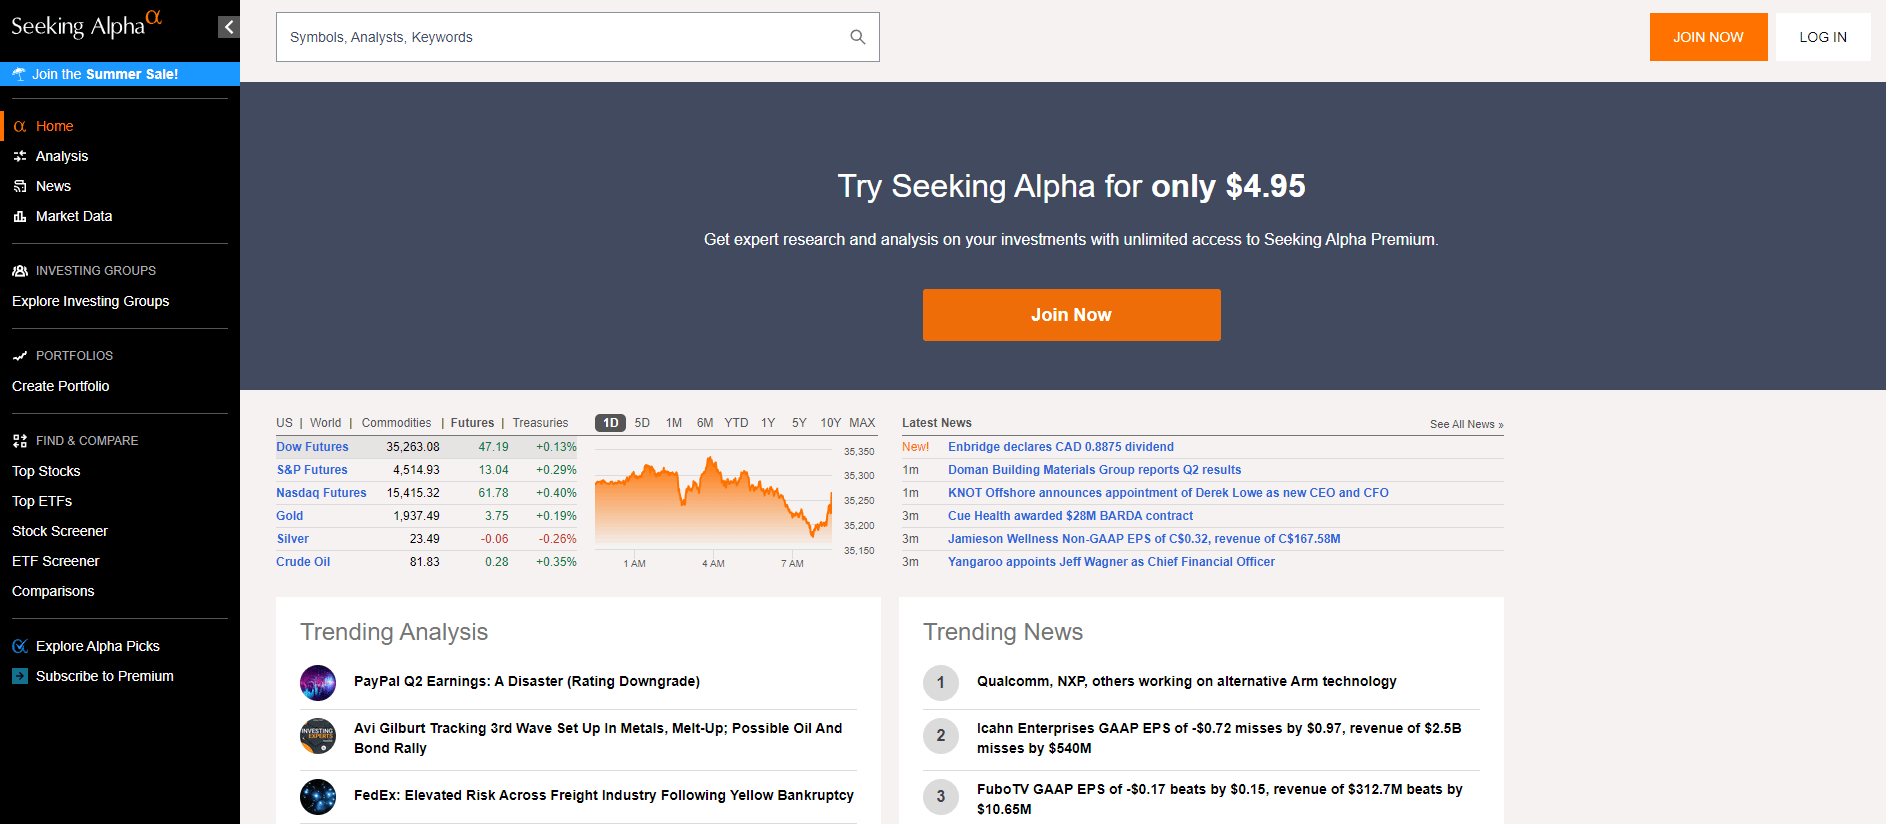 Seeking Alpha homepage